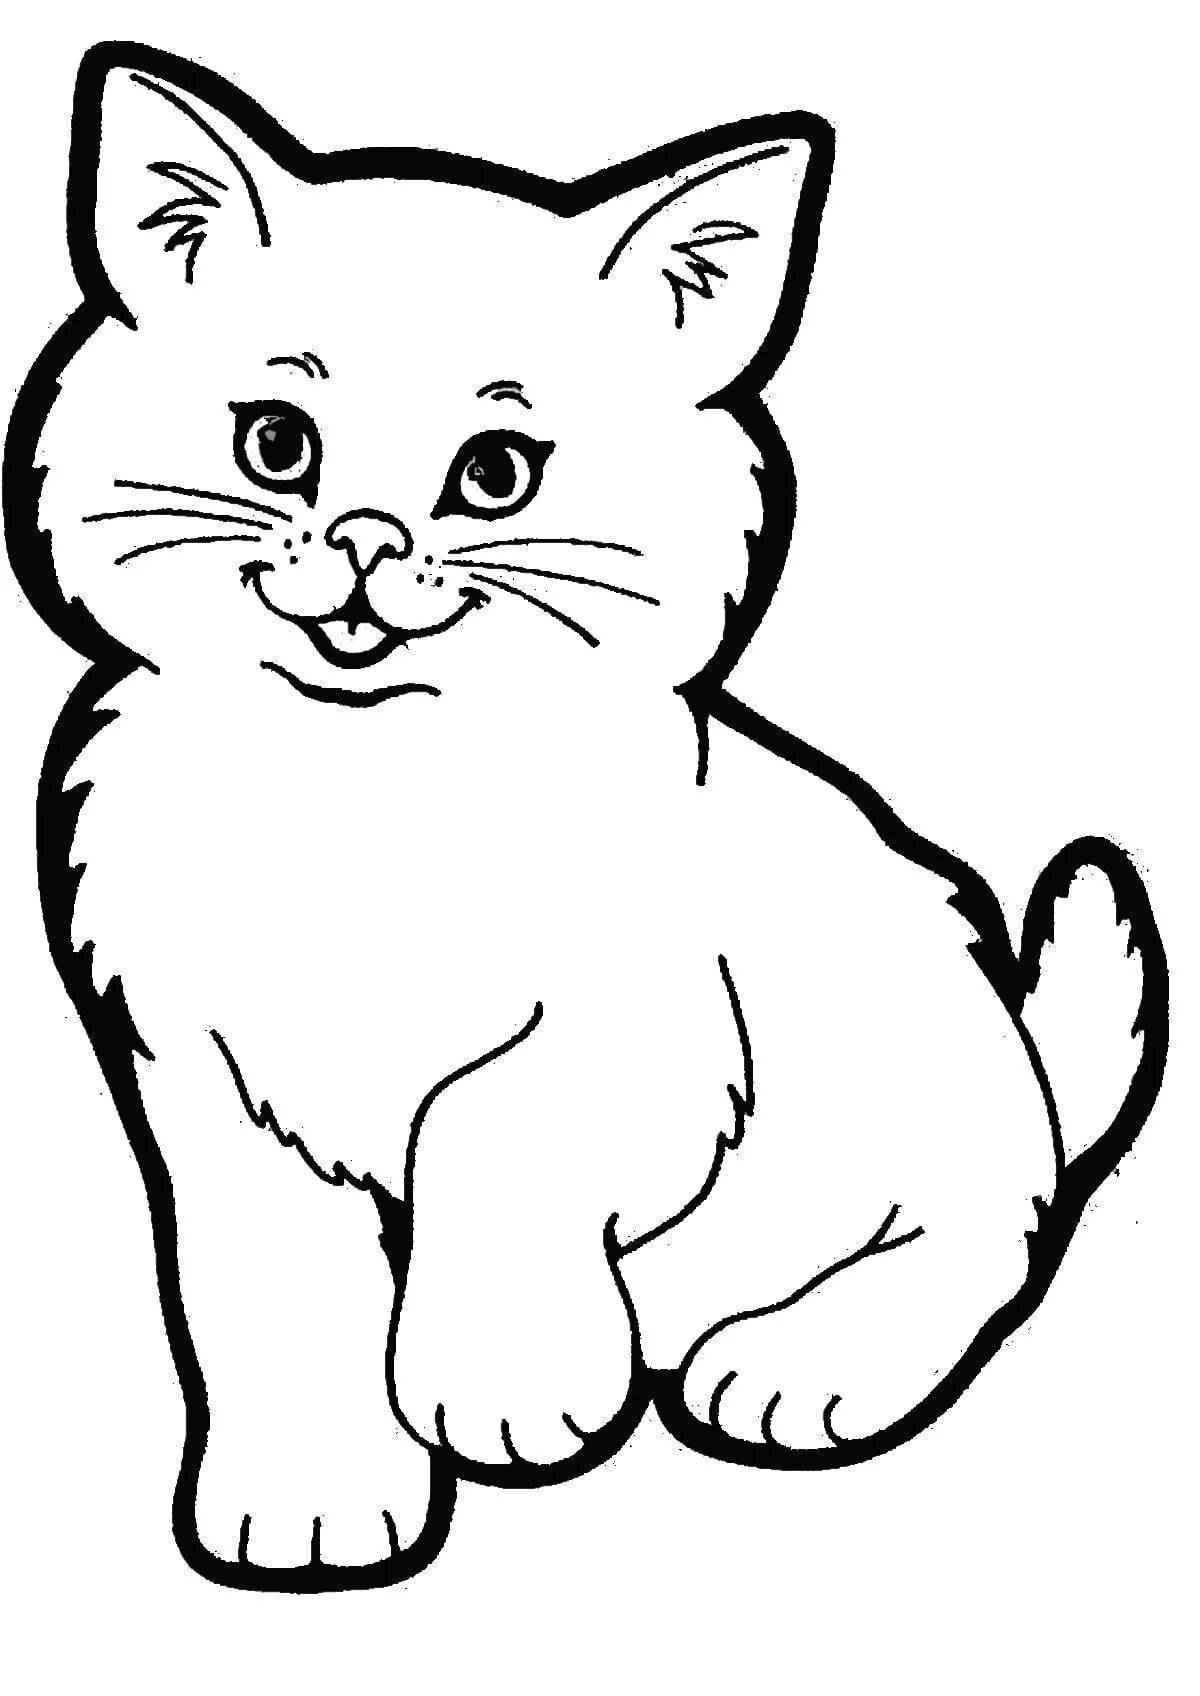 Симпатичная раскраска кошка для детей 2-3 лет